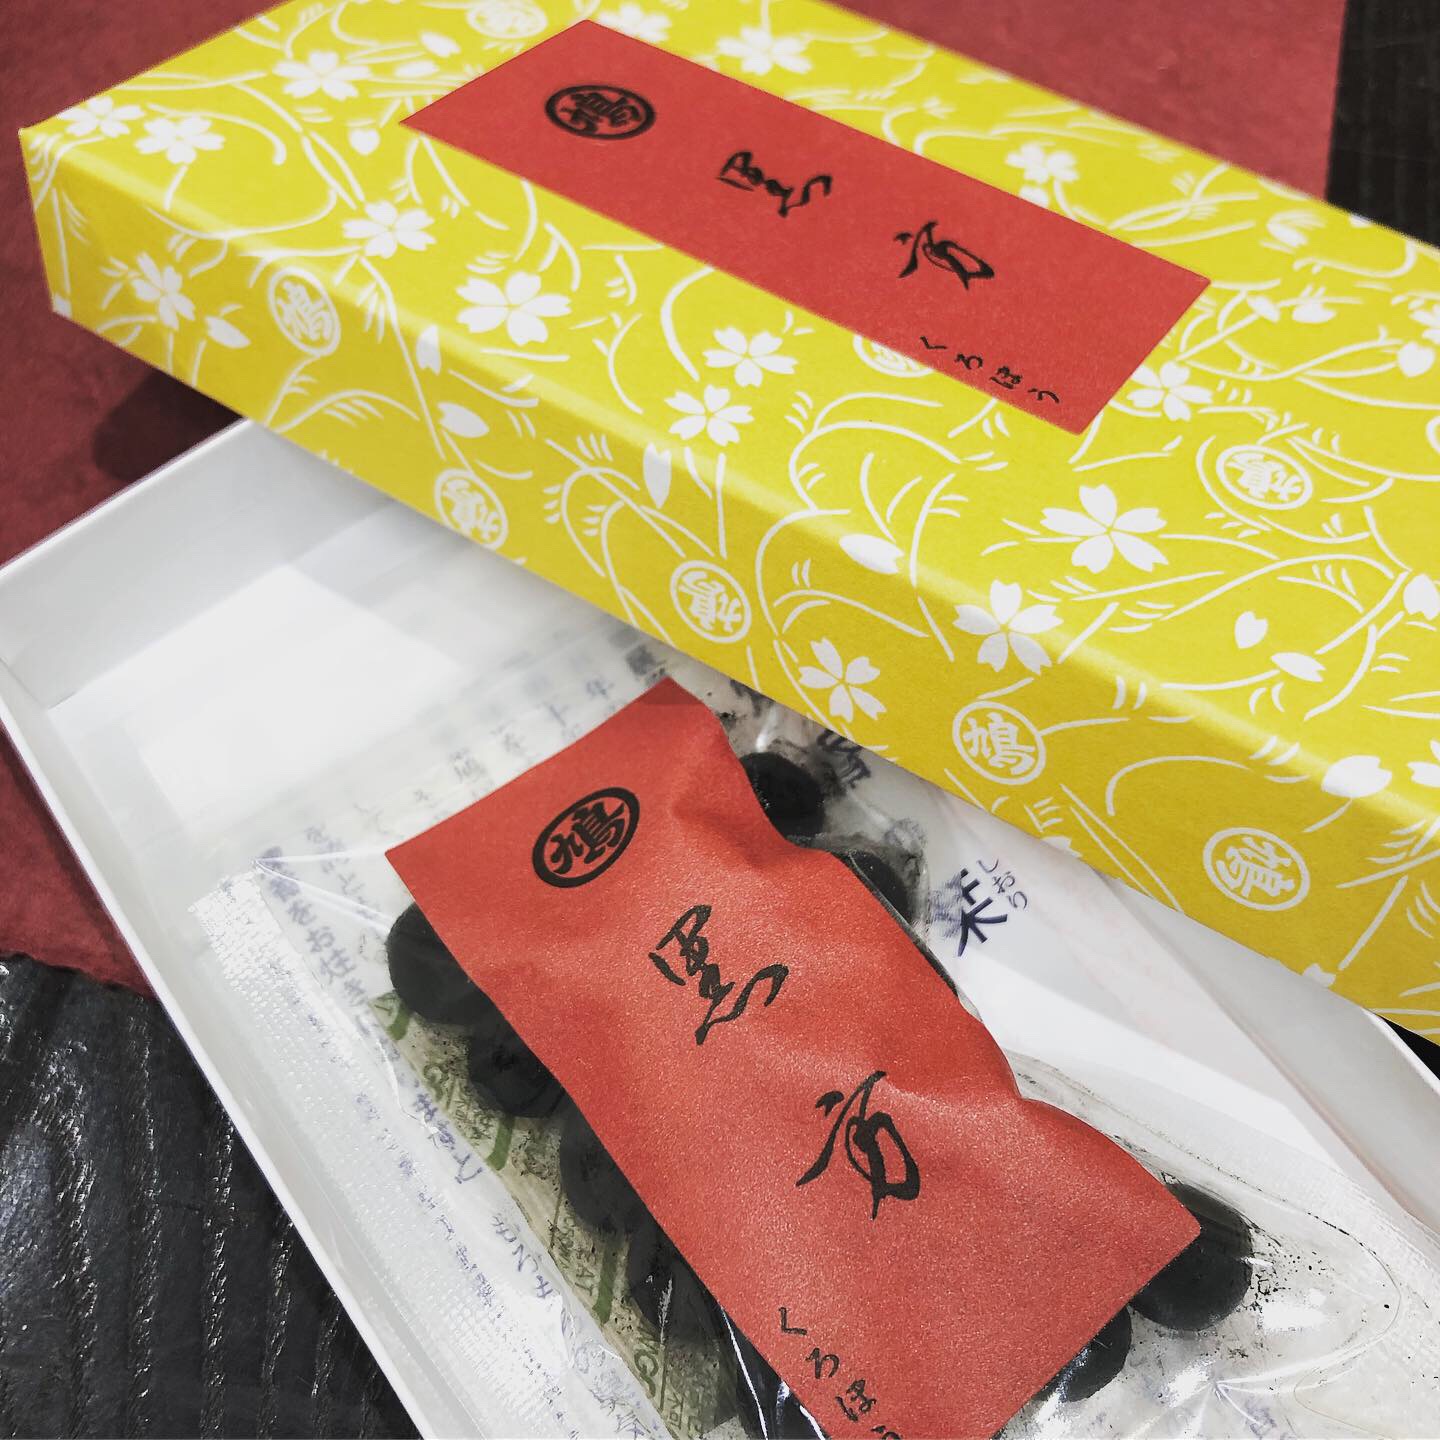 【香源 上野桜木店】お茶席では練香の季節がやってまいりました🌾練香は、貴族の間で親しまれた丸薬のようなお香です。